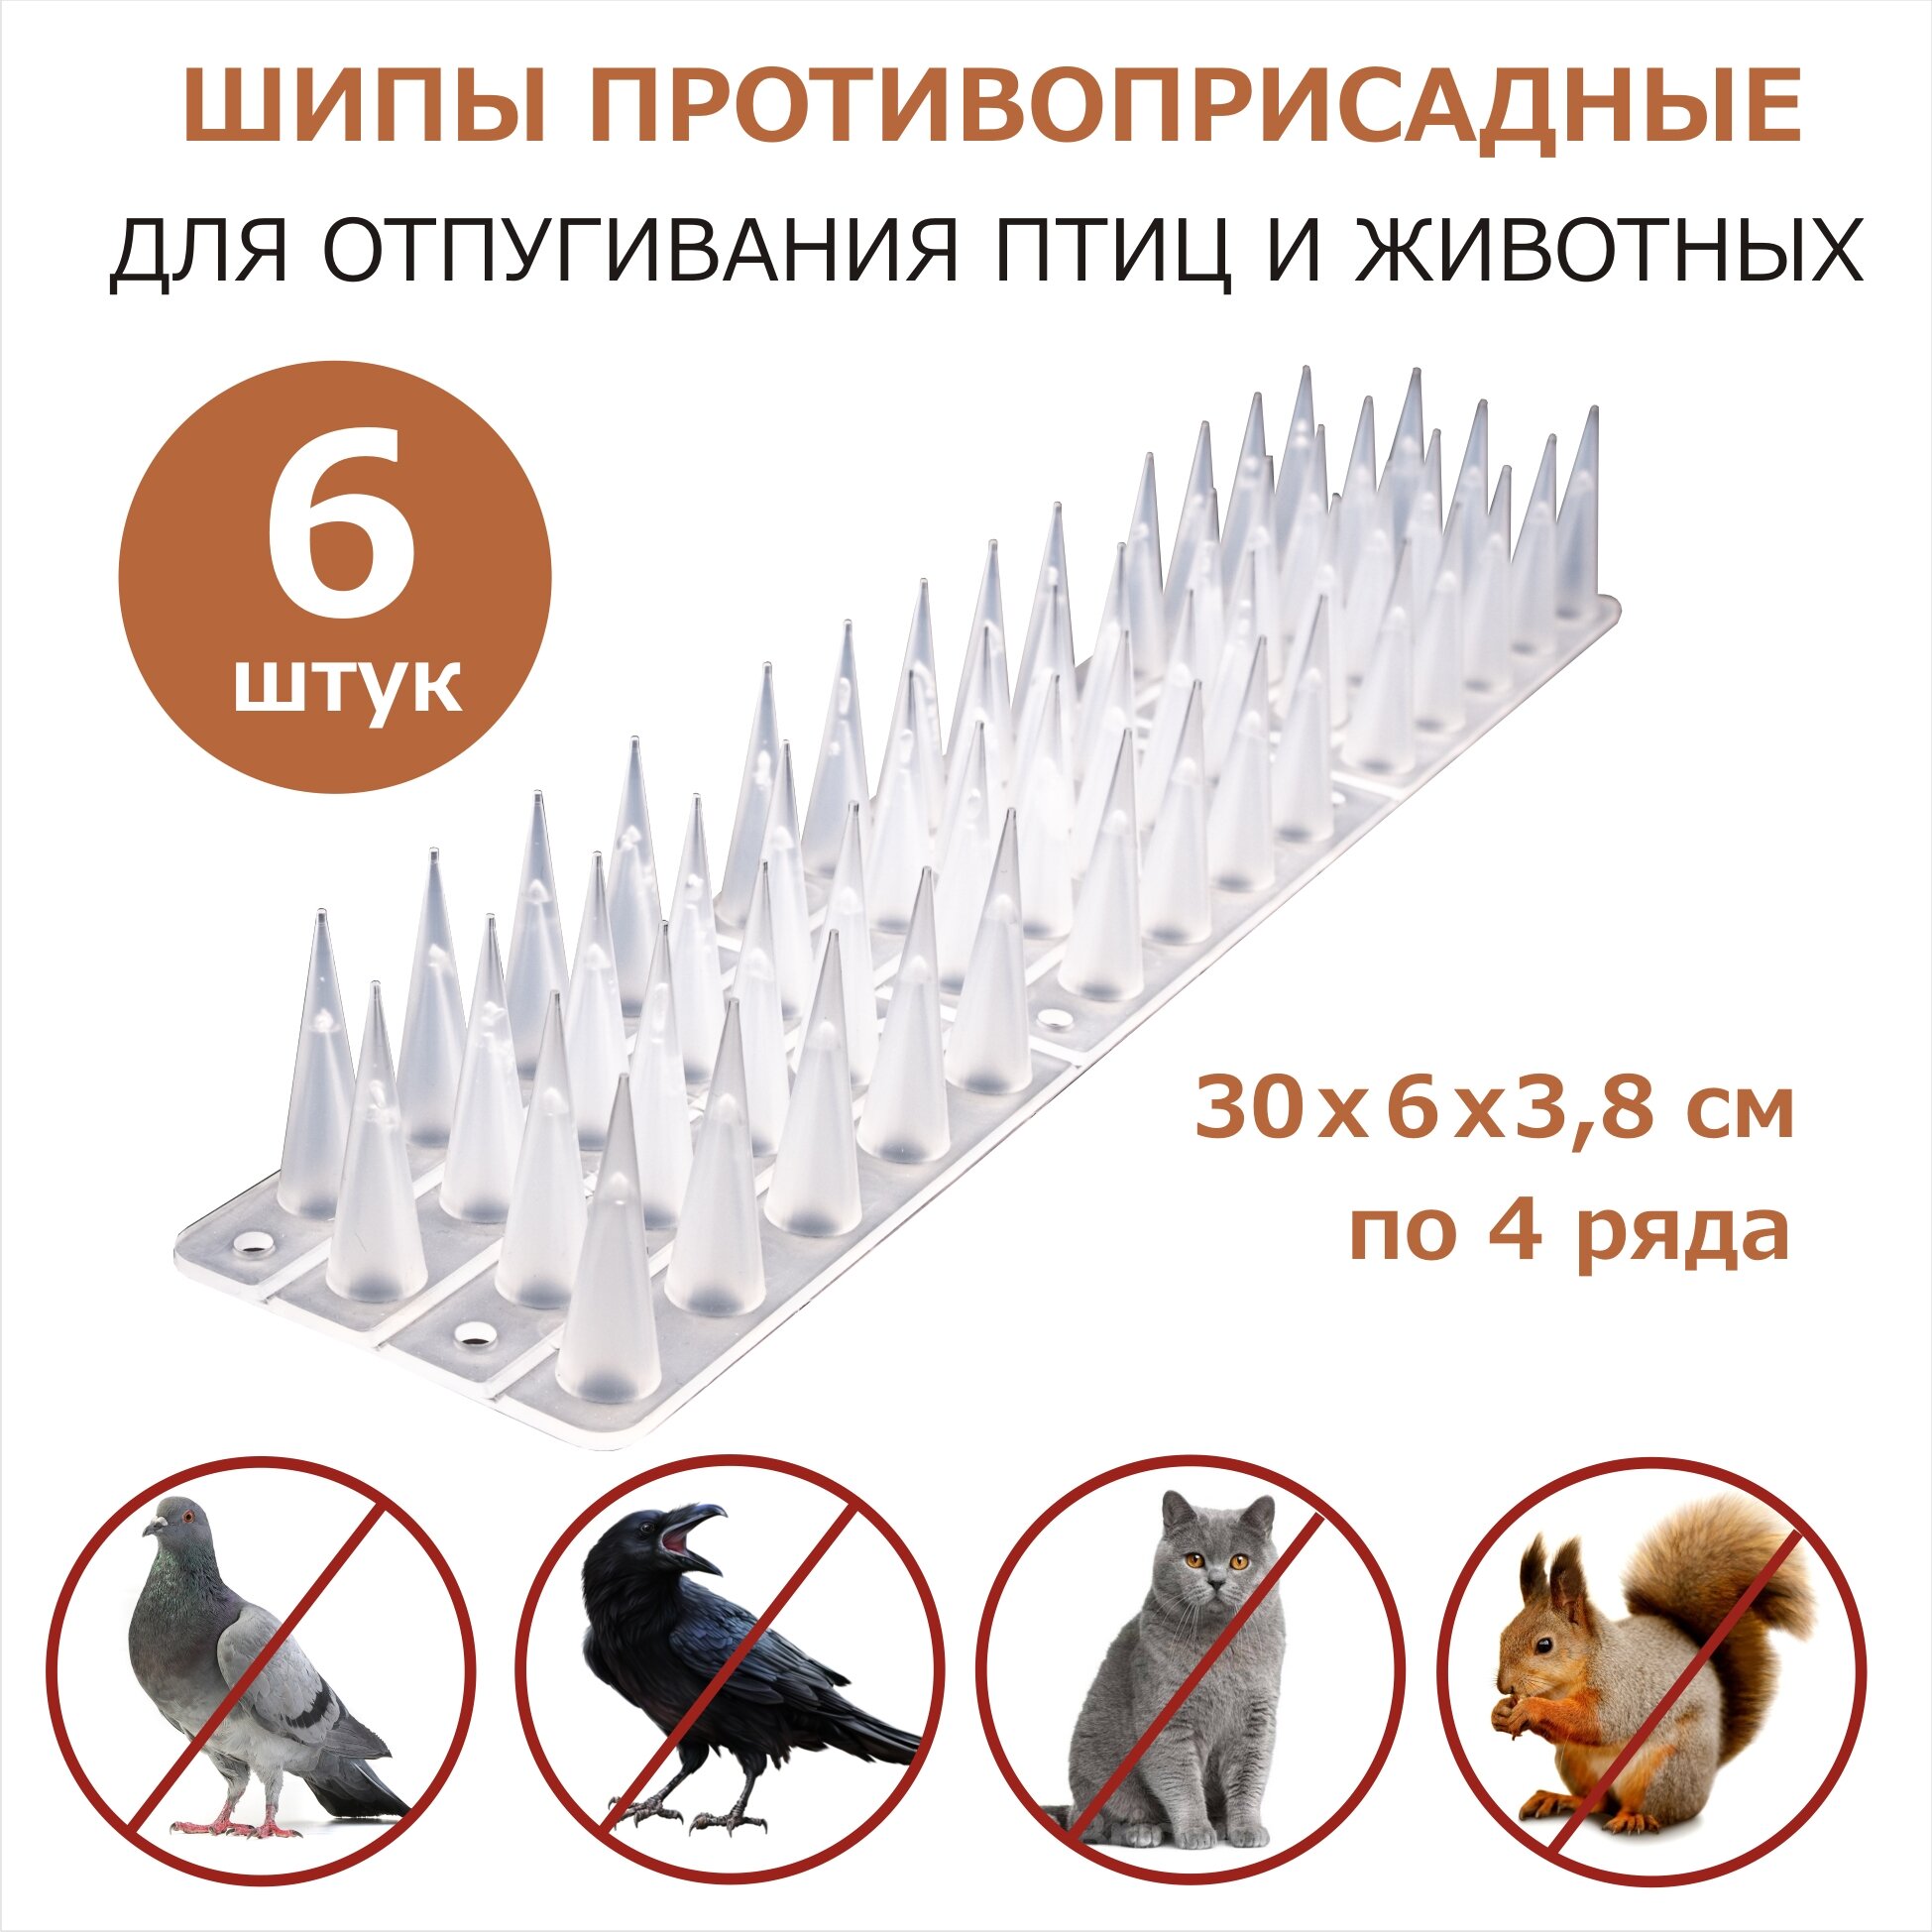 Шипы противоприсадные от птиц и животных 6 секций, пластик